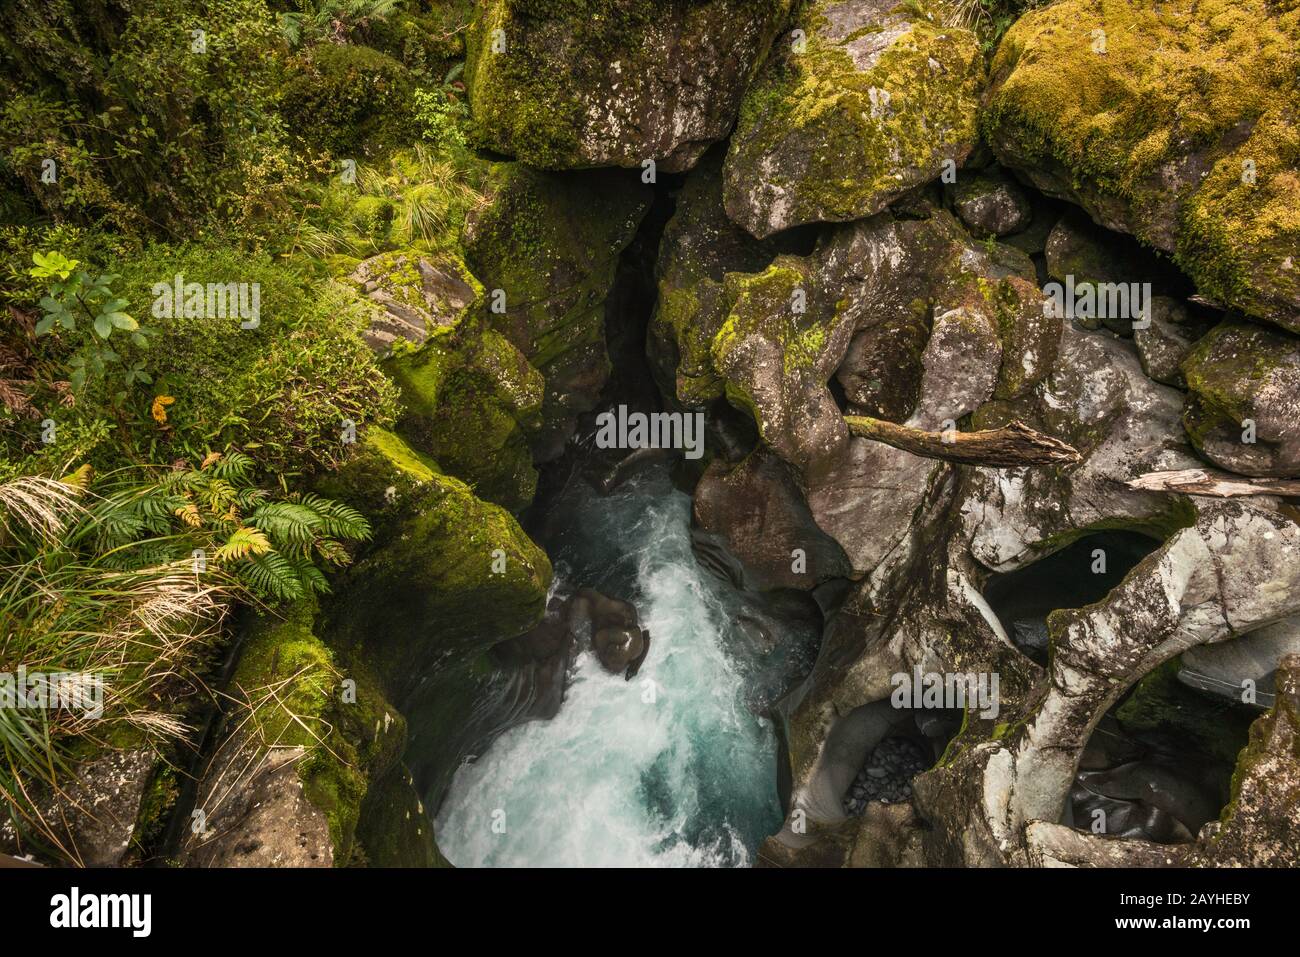 Les cachots se trouvent dans les rochers de la rivière Cleddau, au Chasm, dans le parc national de Fiordland, près de Milford Sound, dans la région de Southland, sur l'île du Sud, en Nouvelle-Zélande Banque D'Images